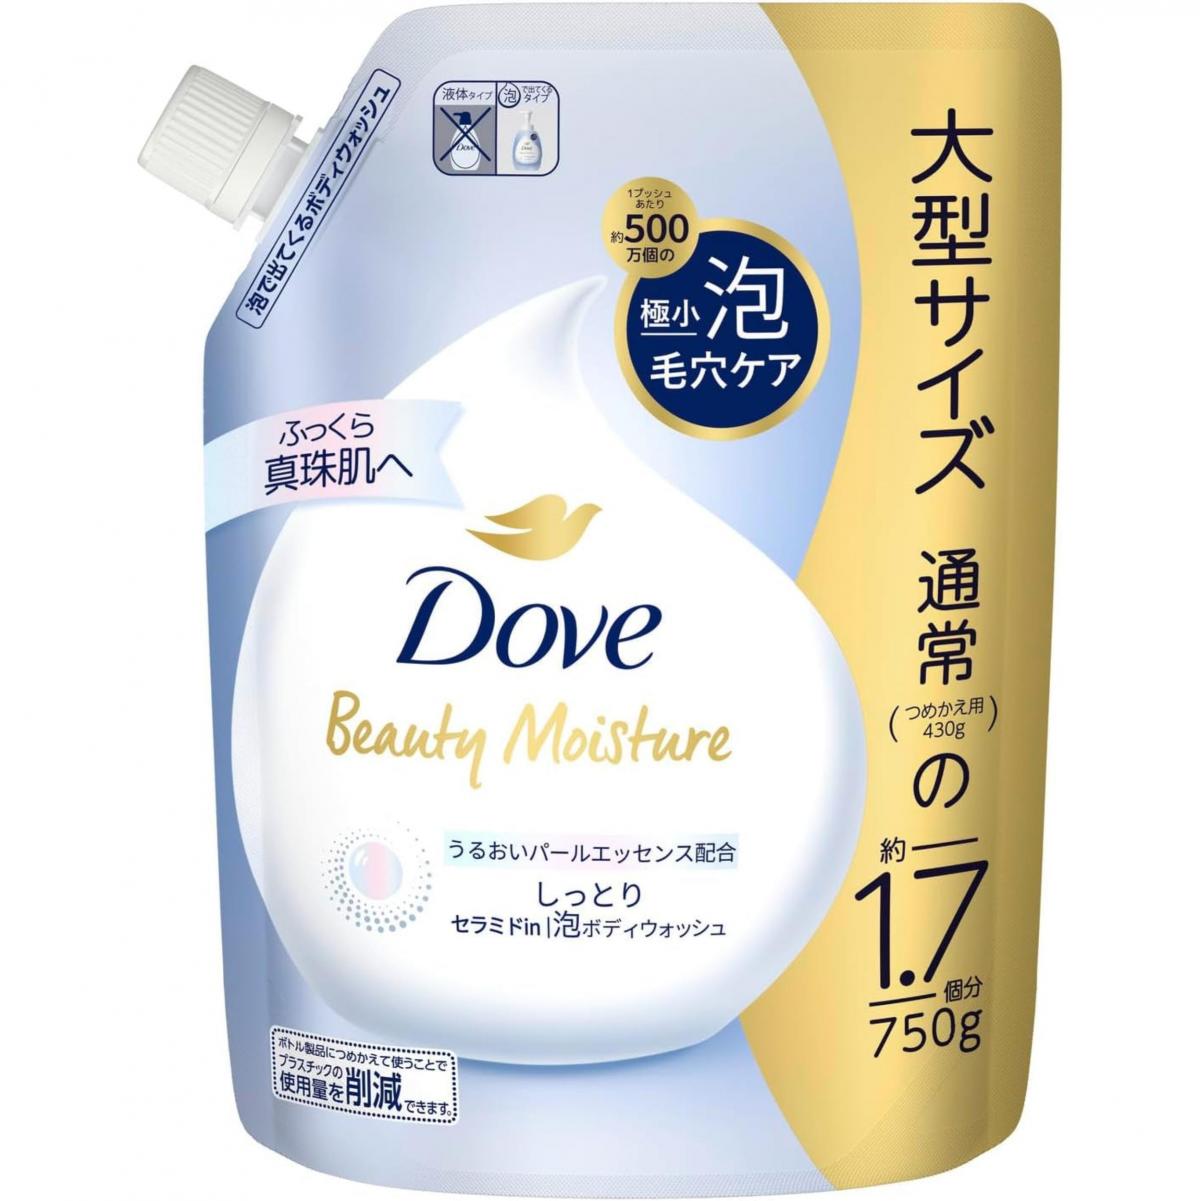 DOVE Beauty Moisture 護膚美肌泡泡沐浴乳 (深層保濕-藍)  750g 補充裝 - 75067 (平行進口)